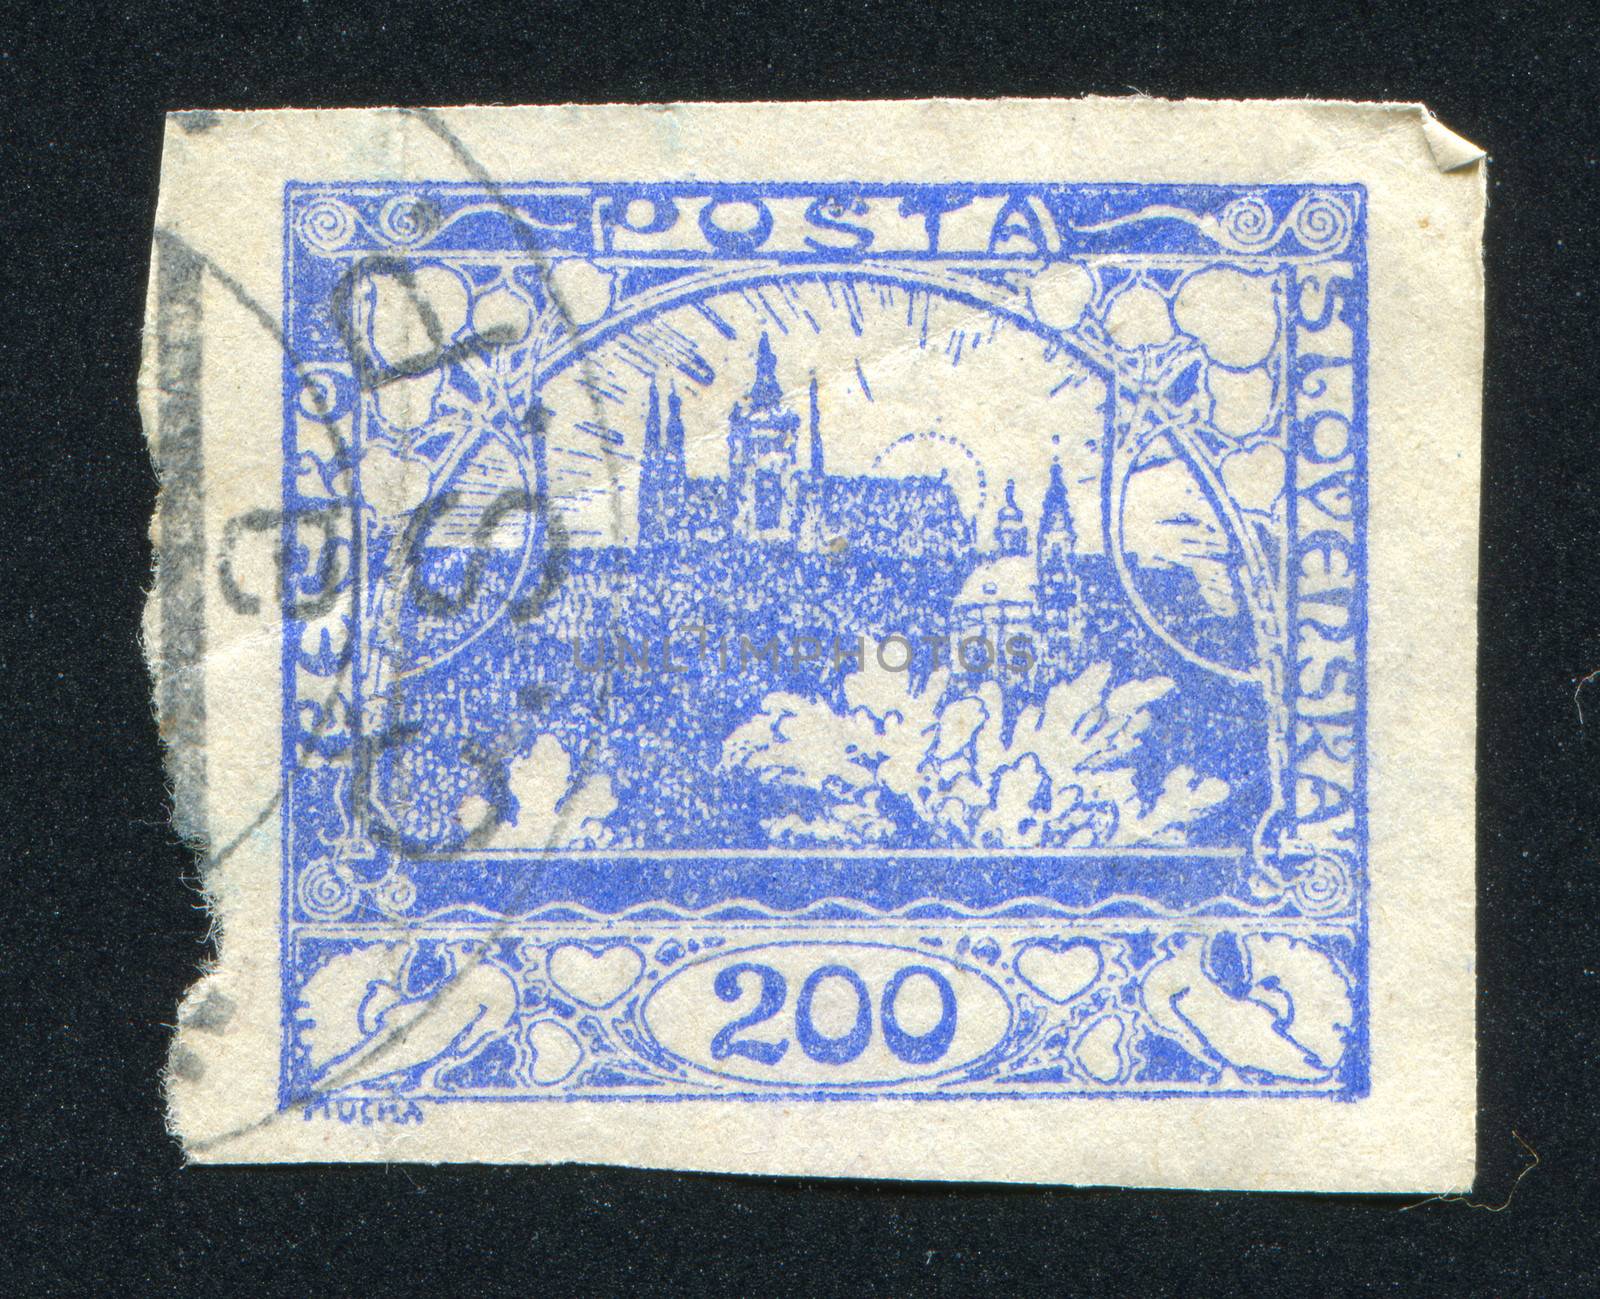 CZECHOSLOVAKIA - CIRCA 1918: stamp printed by Czechoslovakia, shows Hradcany at Prague, circa 1918